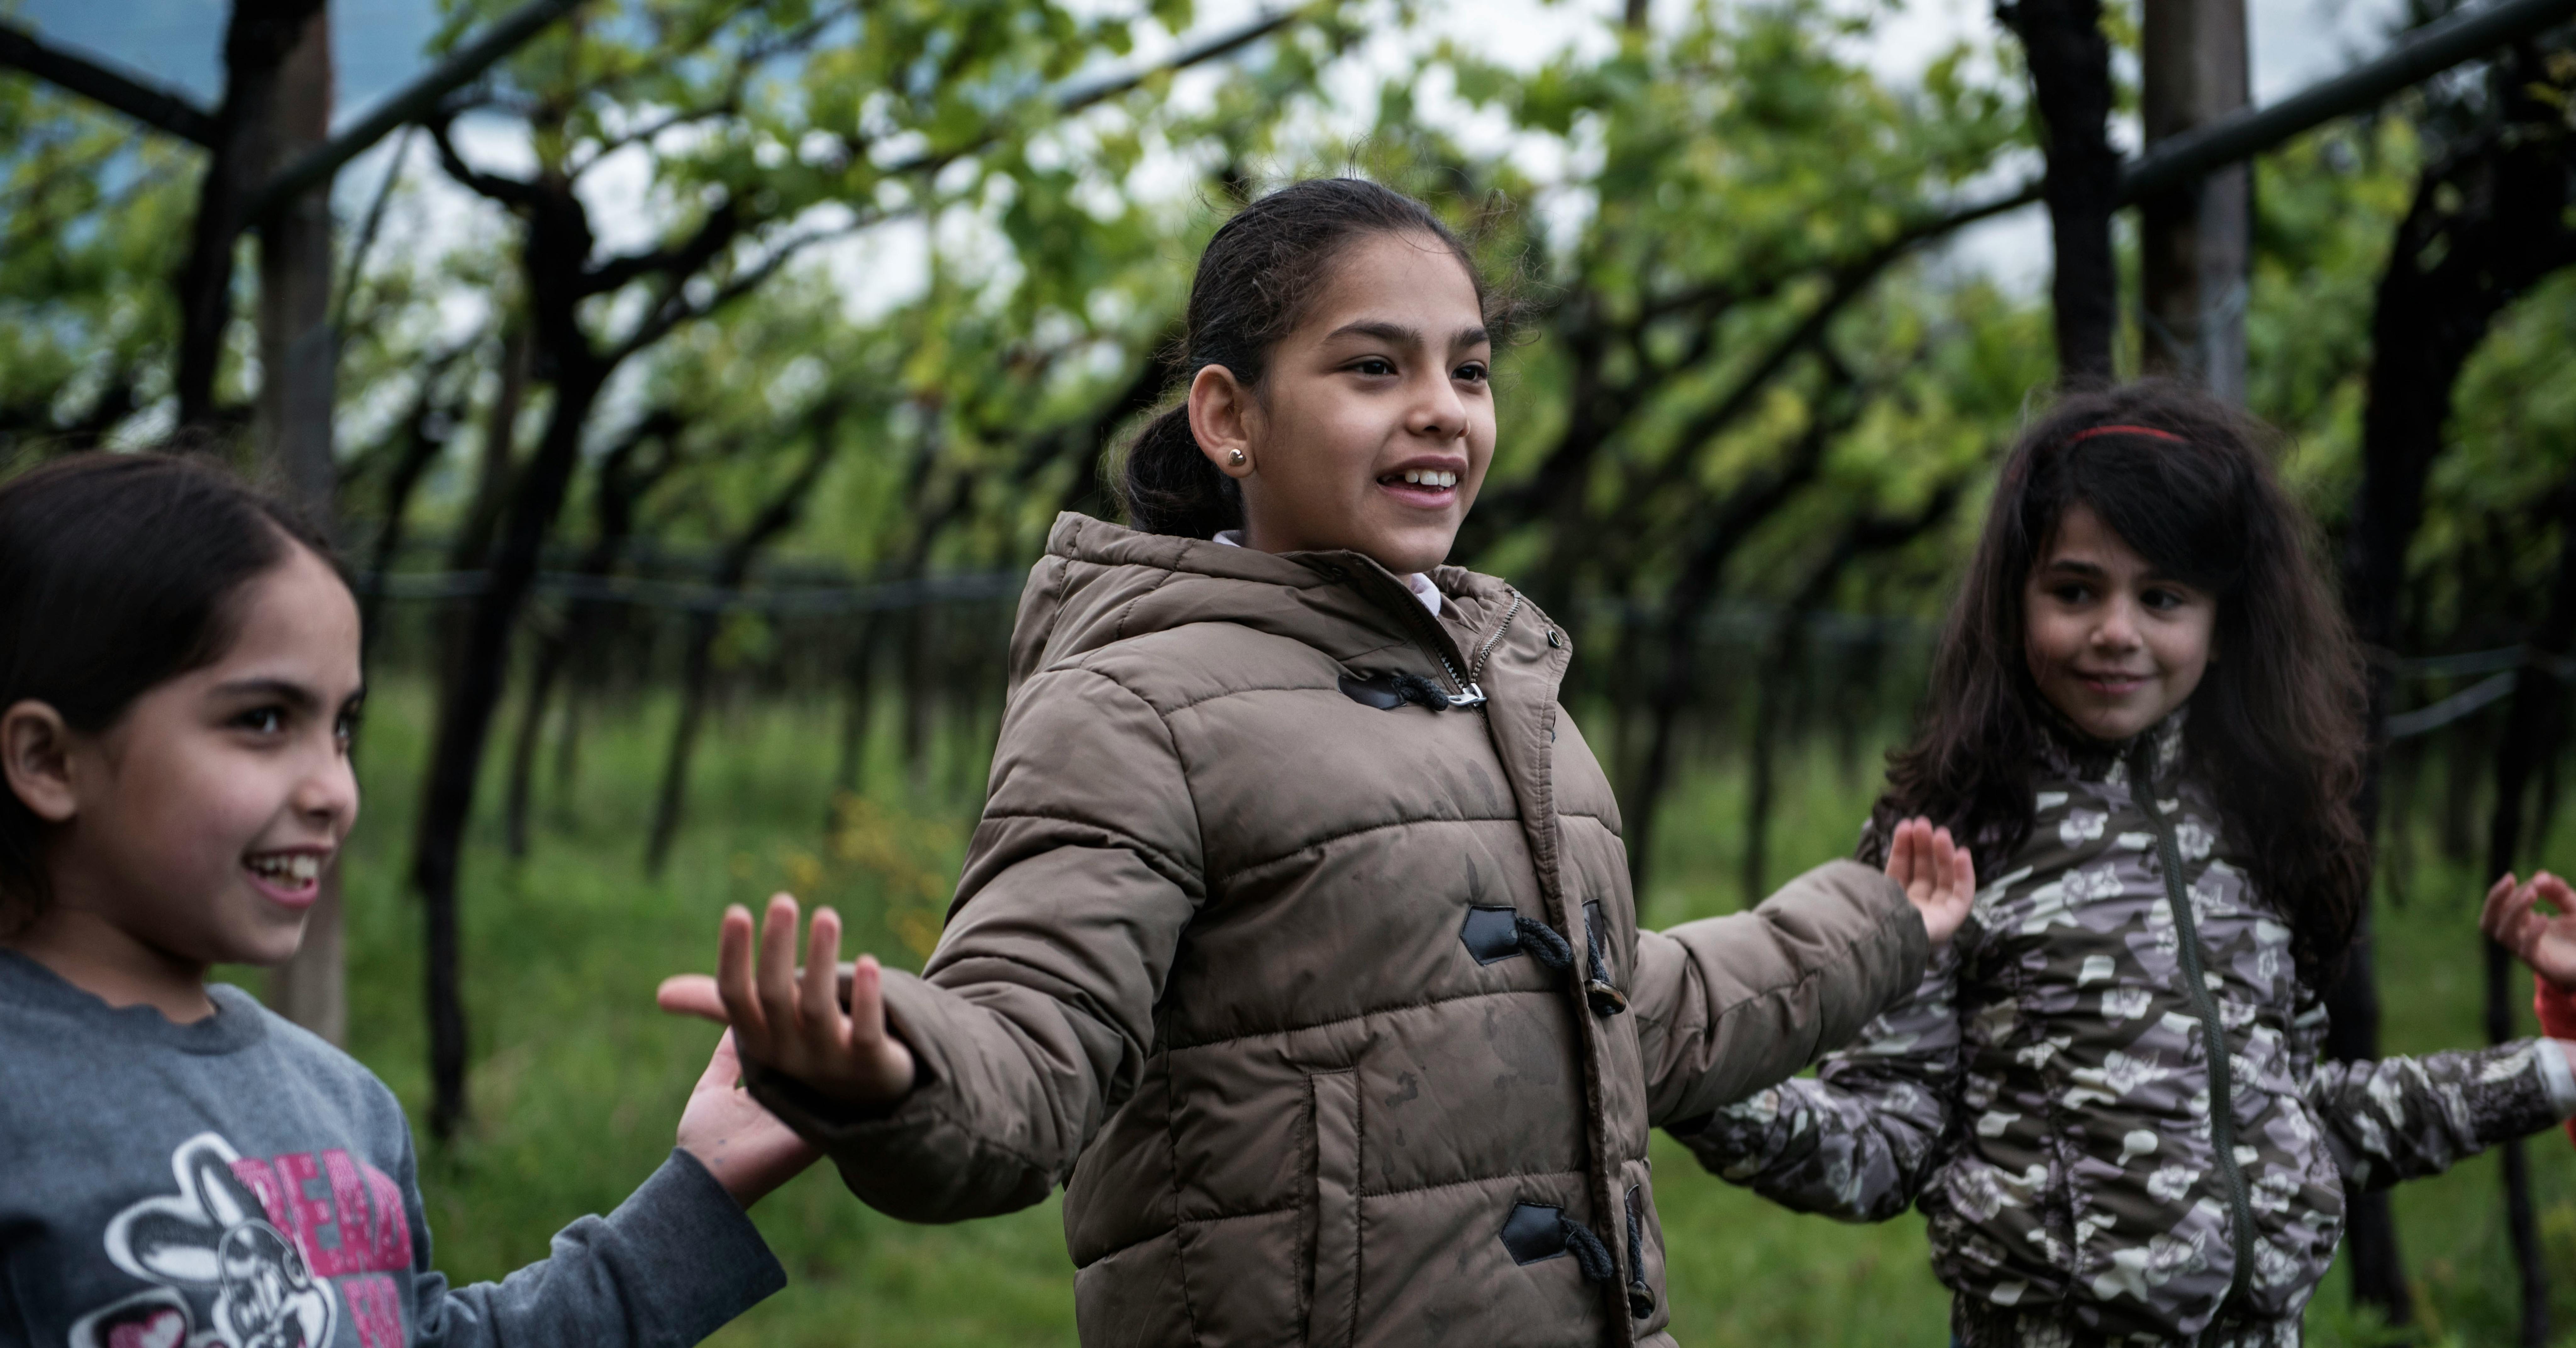 Una bambina di 9 anni, rifugiata siriana, gioca con le sue nuove amiche nella campagna vicino Trento